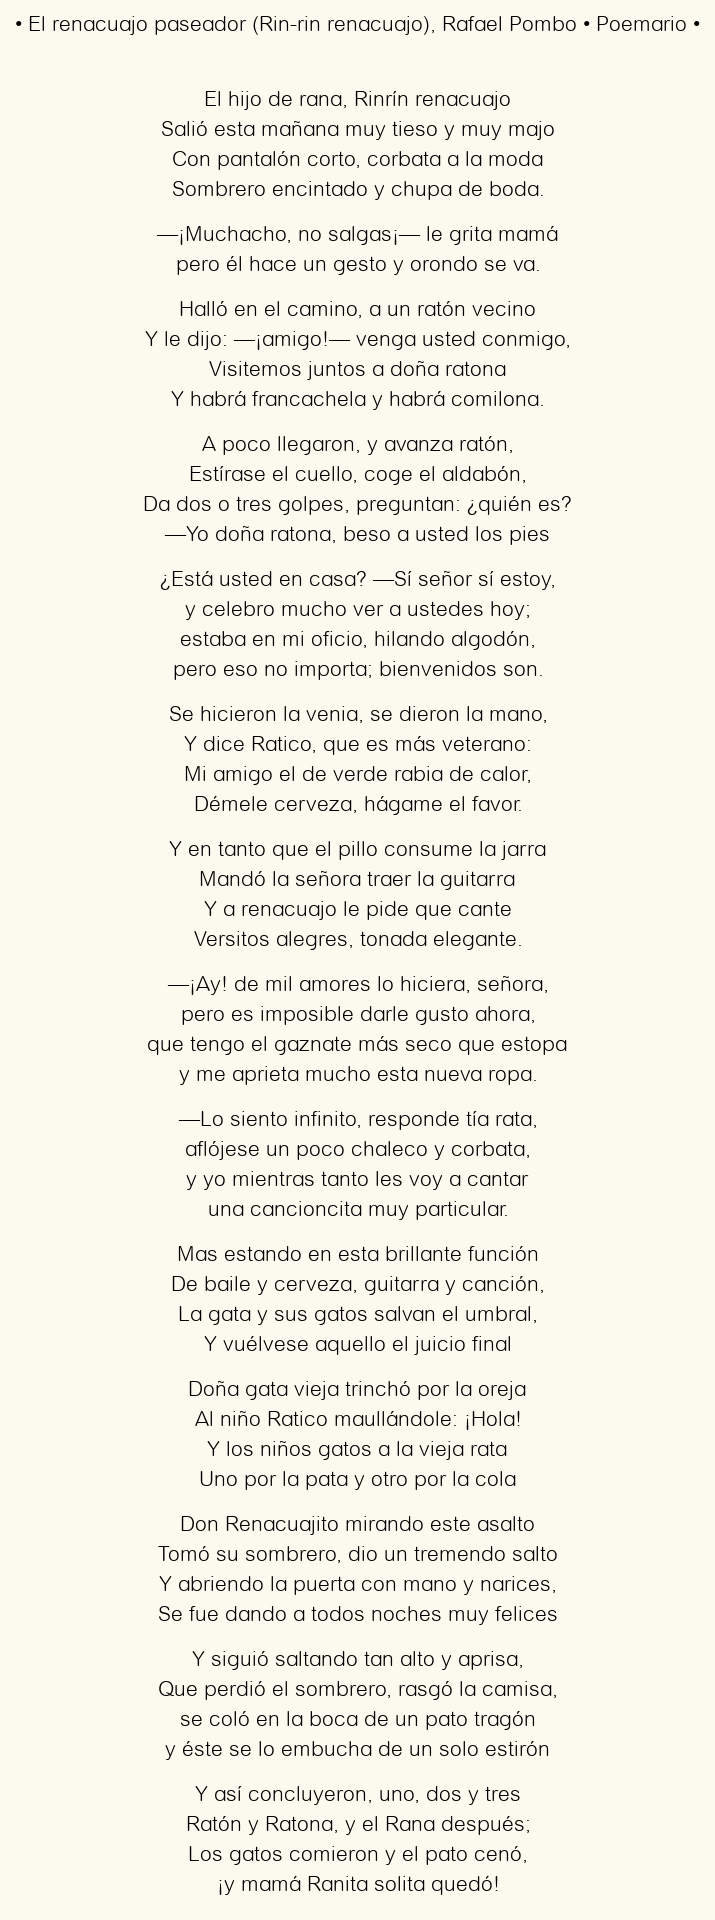 Imagen con el poema El renacuajo paseador (Rin-rin renacuajo), por Rafael Pombo